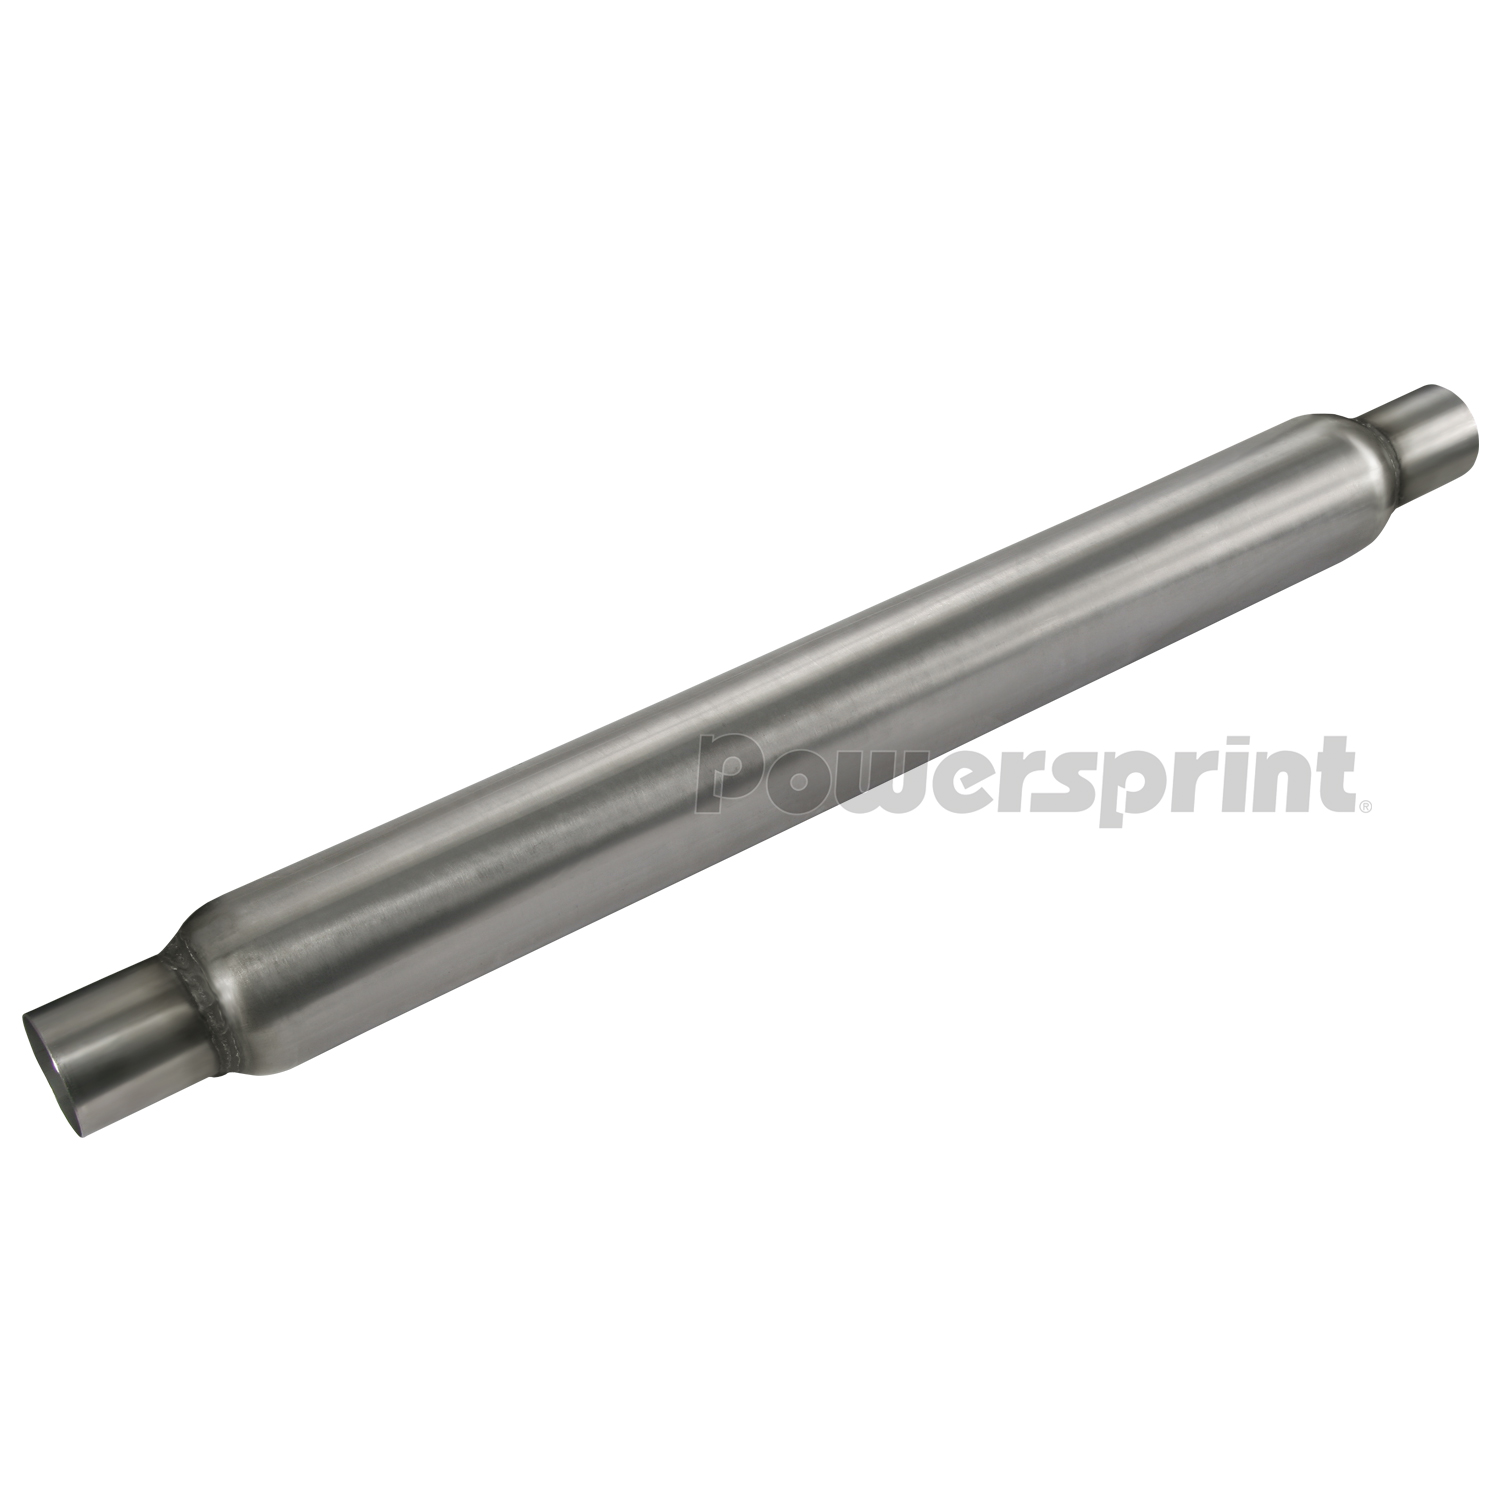 Durchmesser 35 mm 1000 mm Powersprint Absorber-Rohr gelocht 